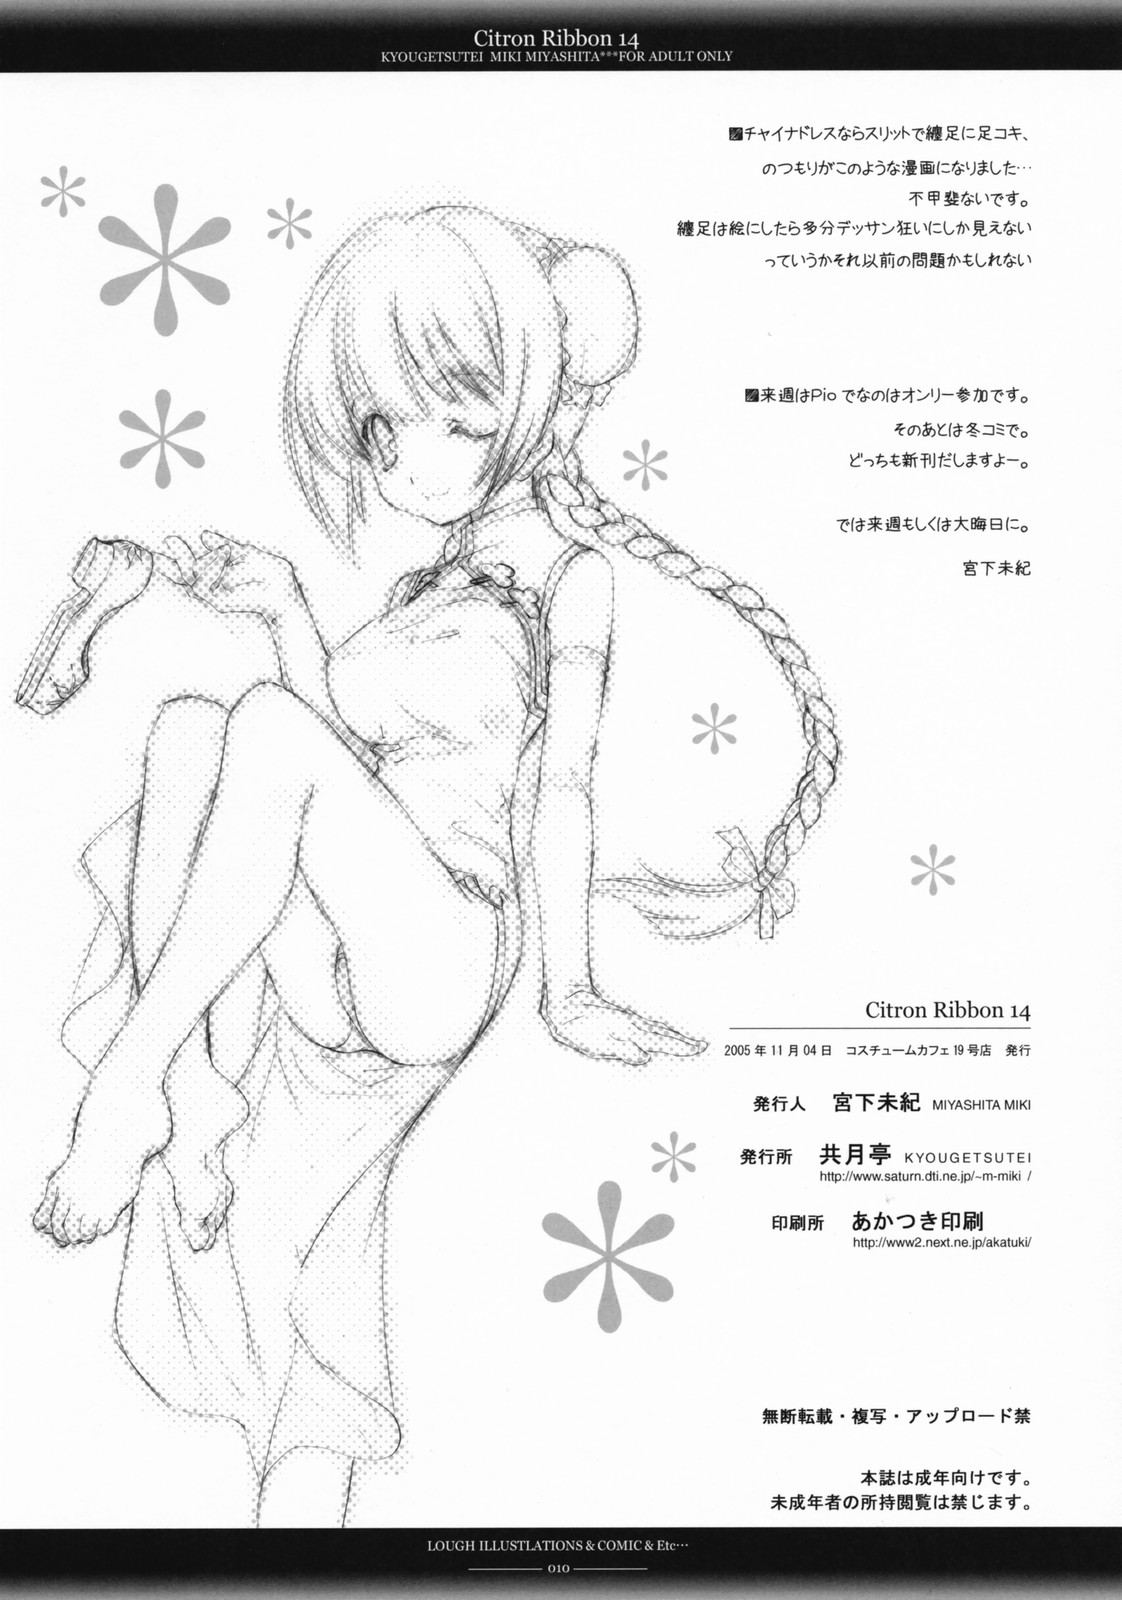 (C73) [Kyougetsutei (Miki Miyashita)] Citron Ribbon 14 (Kidou Senshi Gundam 00 / Mobile Suit Gundam 00) [Chinese] (C73) [共月亭 (宮下未紀)] Citron Ribbon 14 (機動戦士ガンダム00) [中文翻譯]